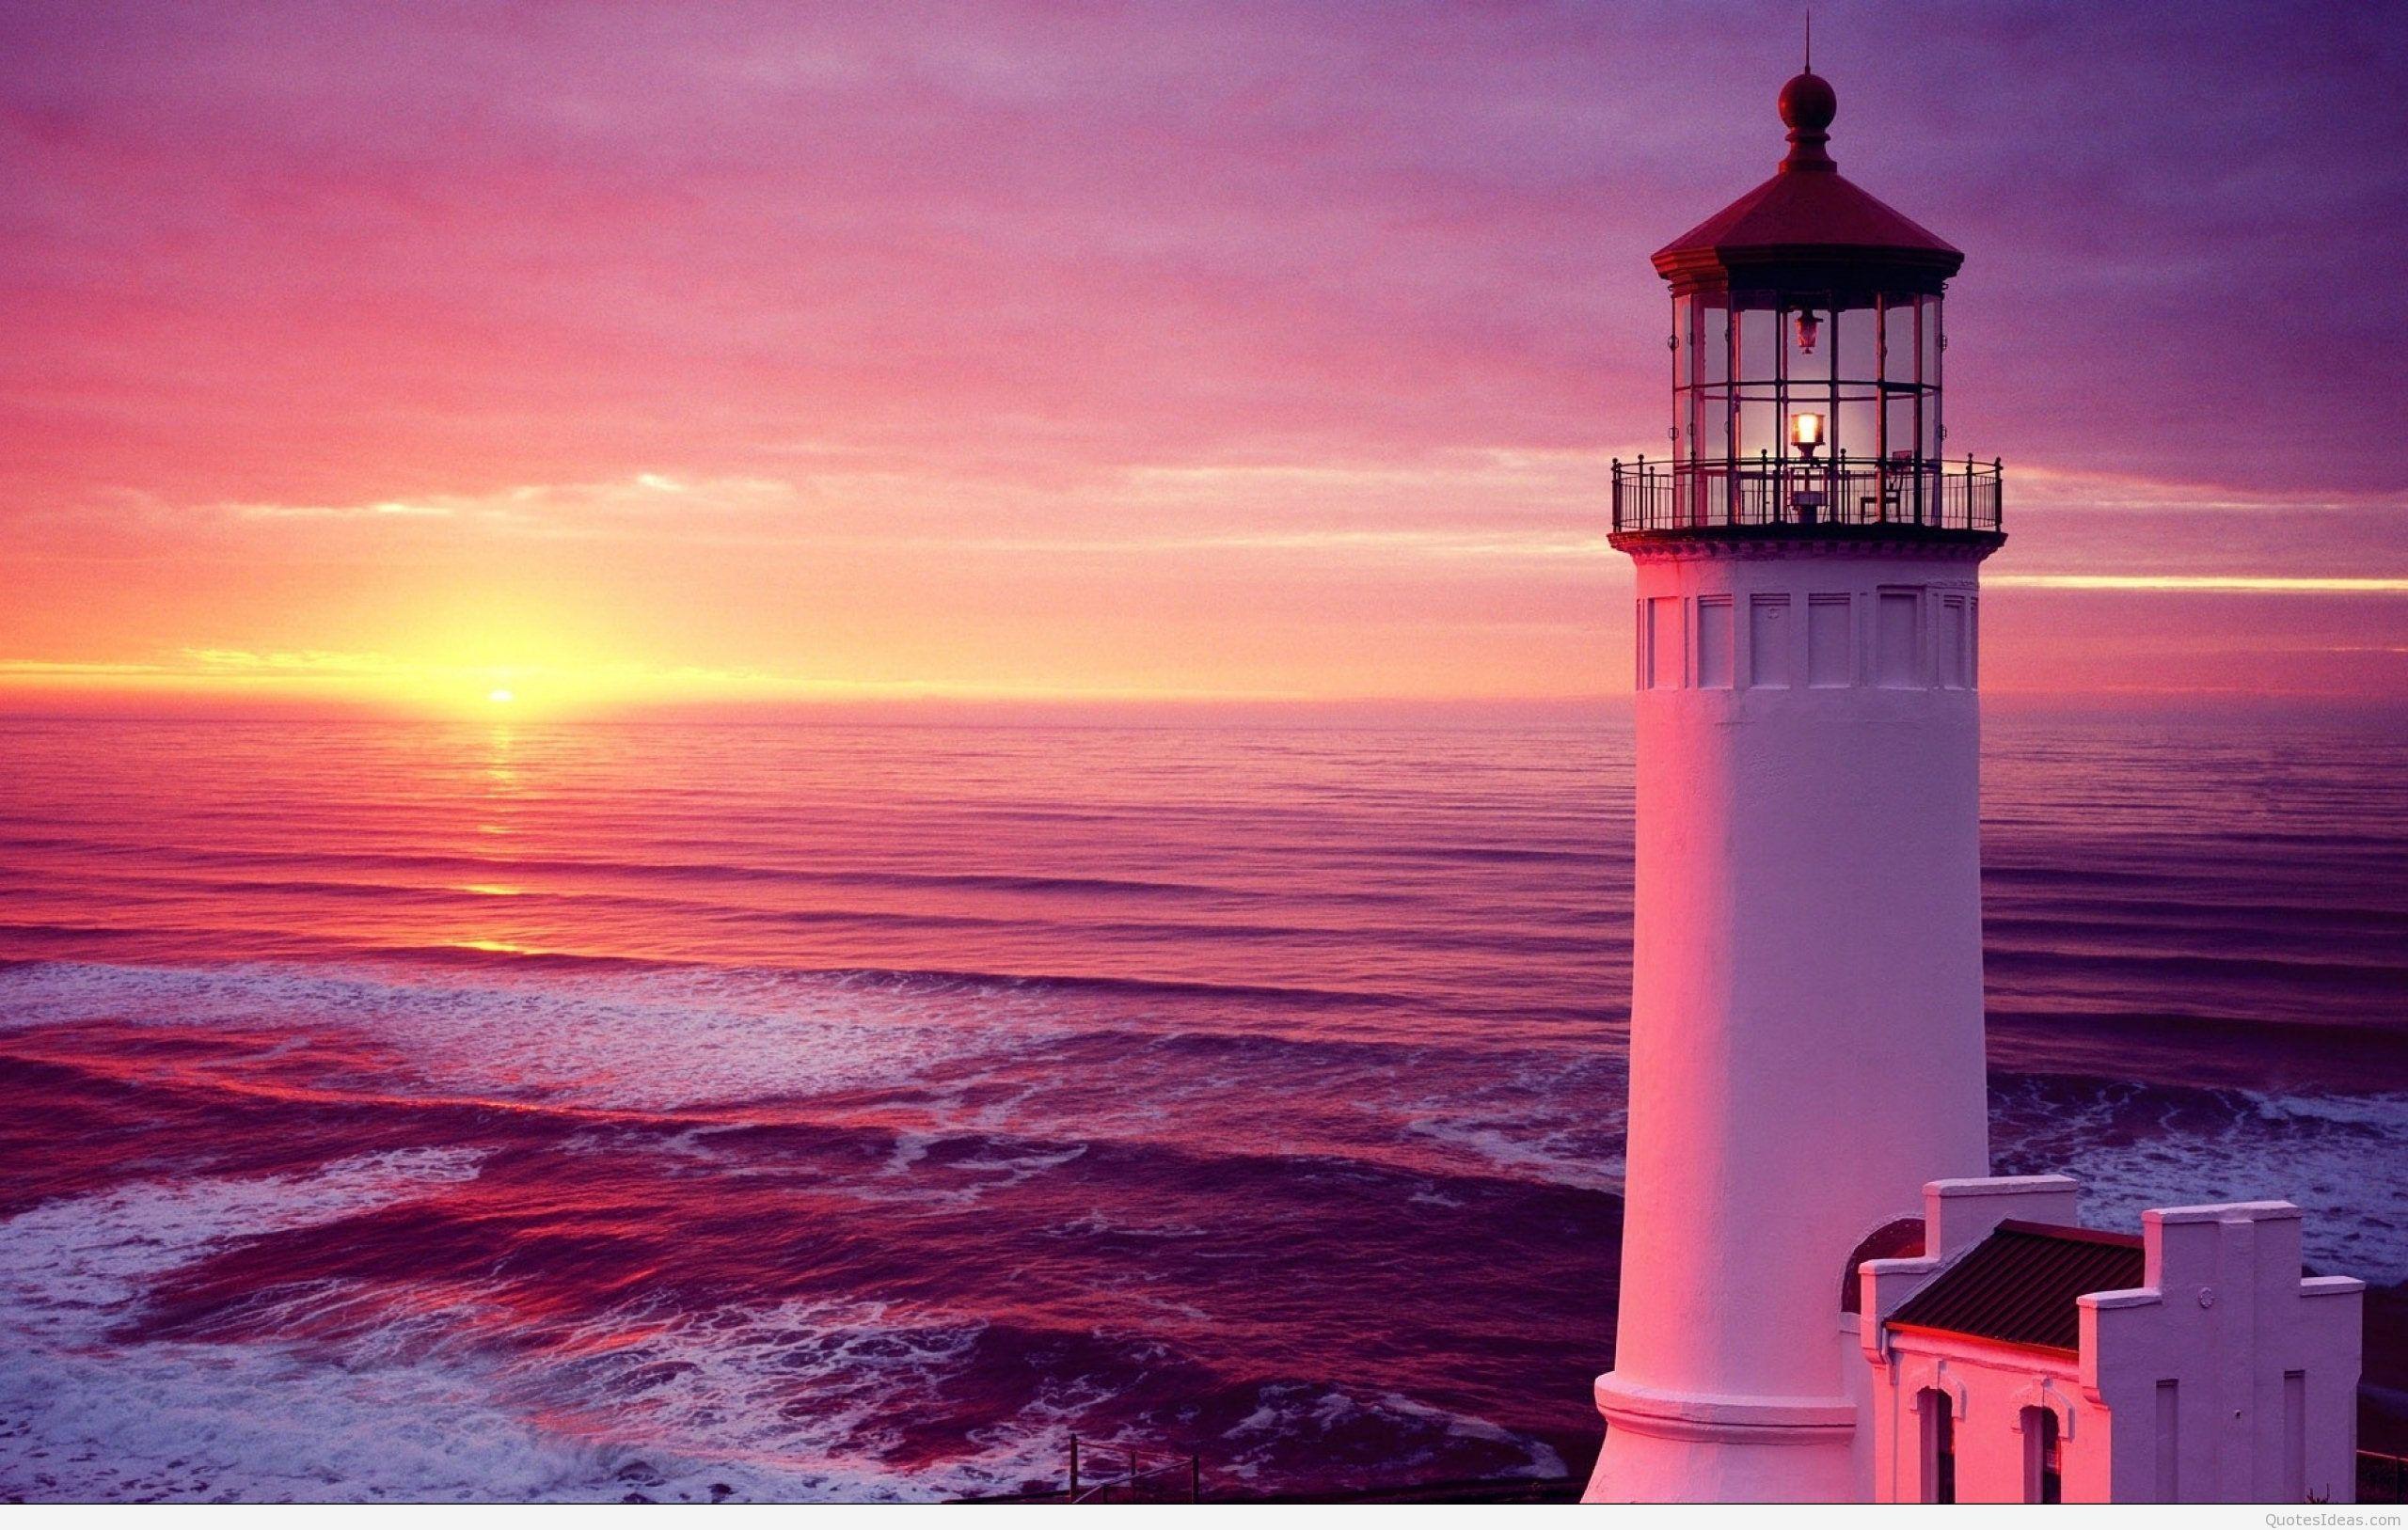 Cùng chiêm ngưỡng đèn hải đăng hoàng hôn mùa hè trên bãi biển thơ mộng, những ánh đèn lấp lánh lung linh khi mặt trời lặn, tạo nên một khung cảnh tuyệt đẹp và đầy cảm hứng.